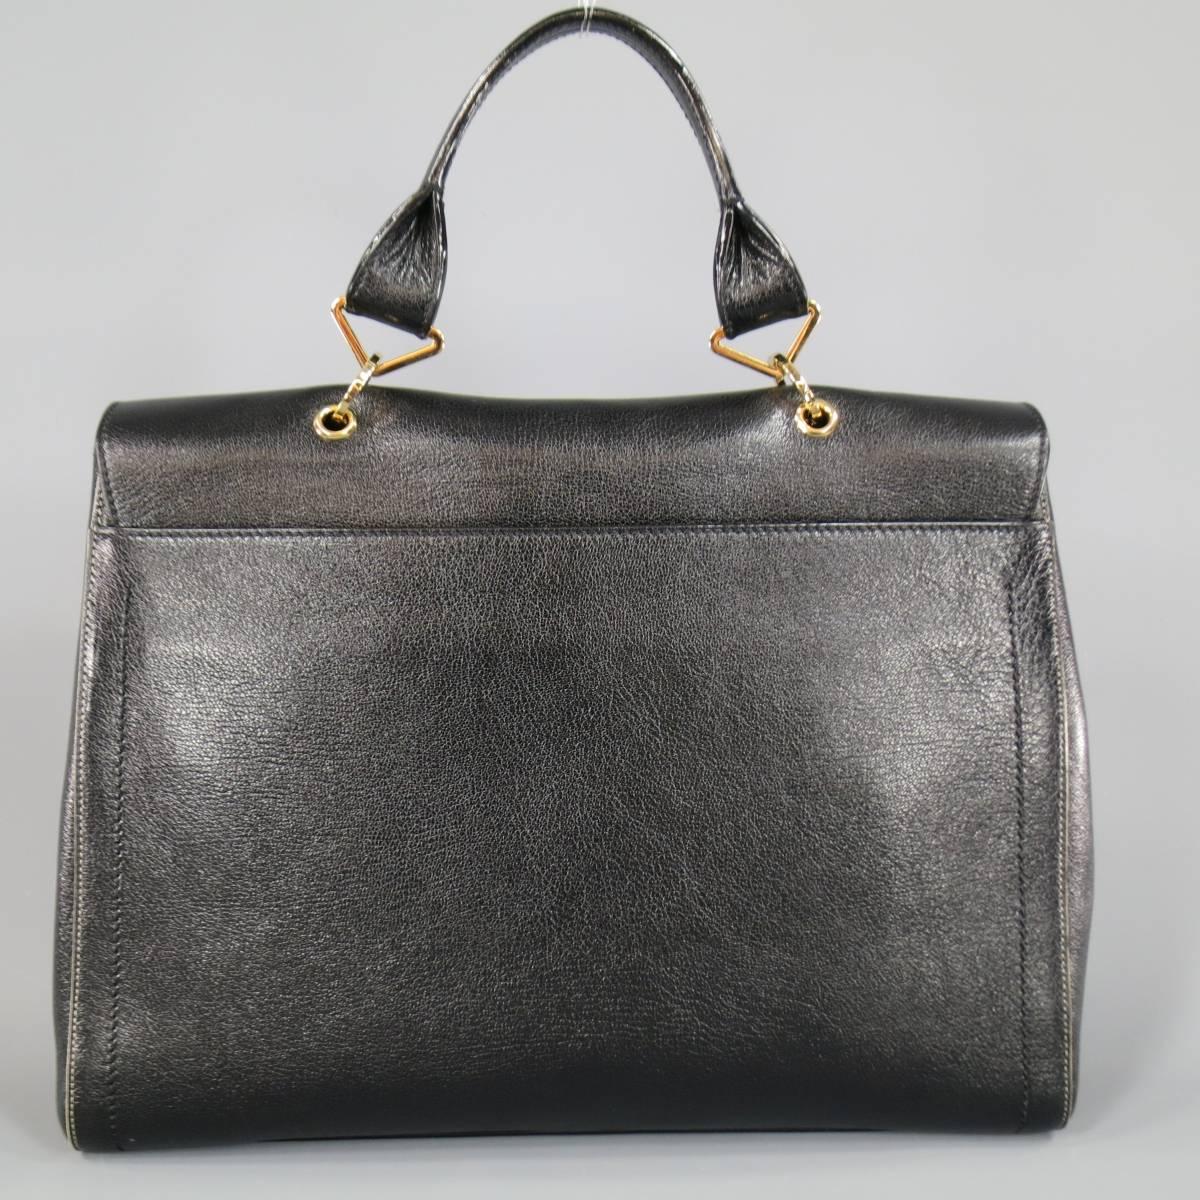 New MARC JACOBS Black Leather Gold Lock Shoulder Strap Satchel Handbag 3